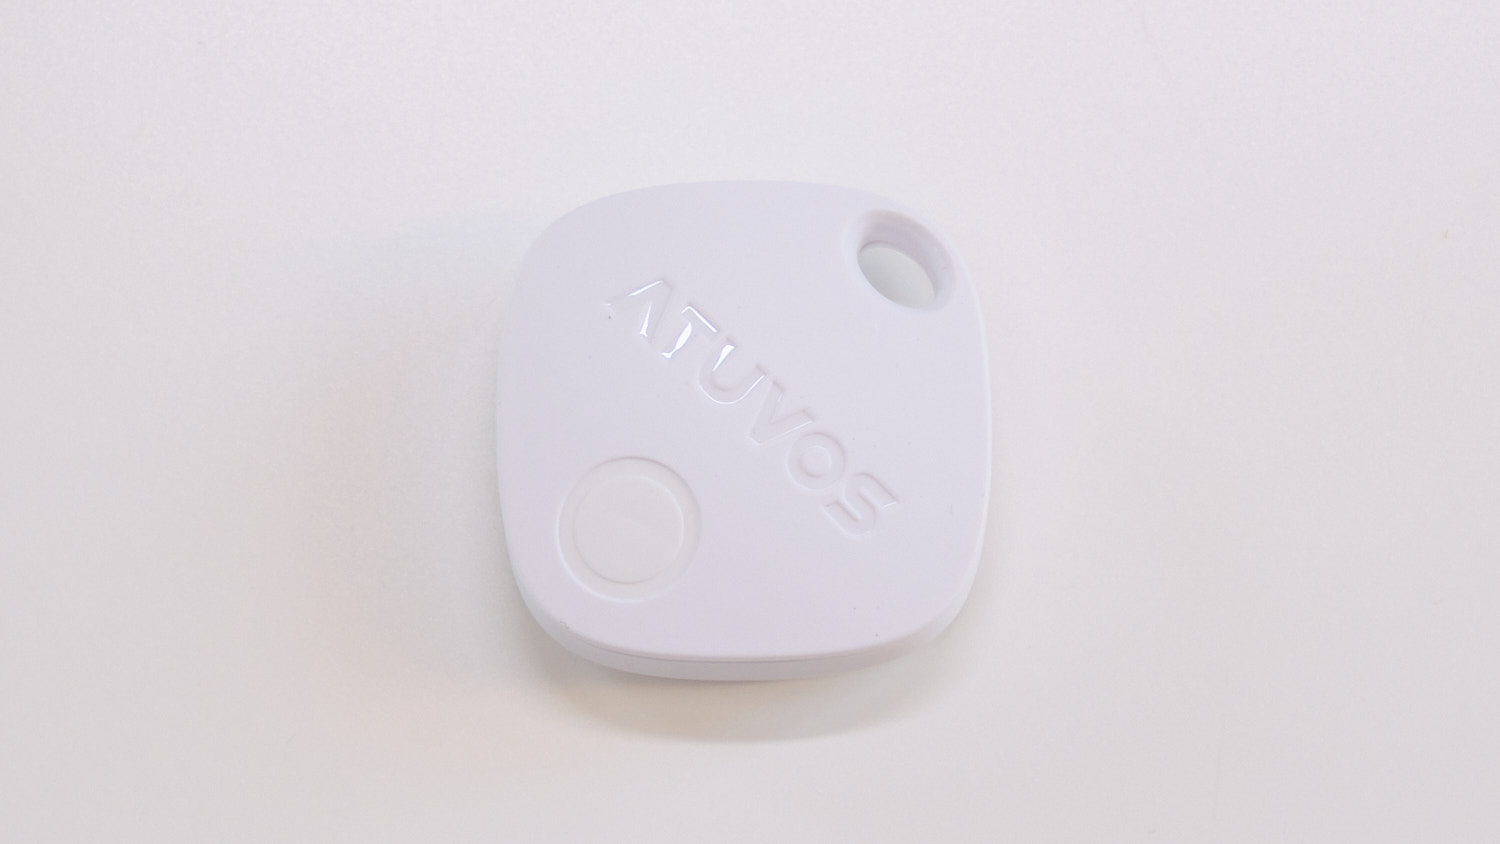 Atuvos AT2101 Schlüsselfinder – Bluetooth-Tracker mit großem Loch für Schlüsselring